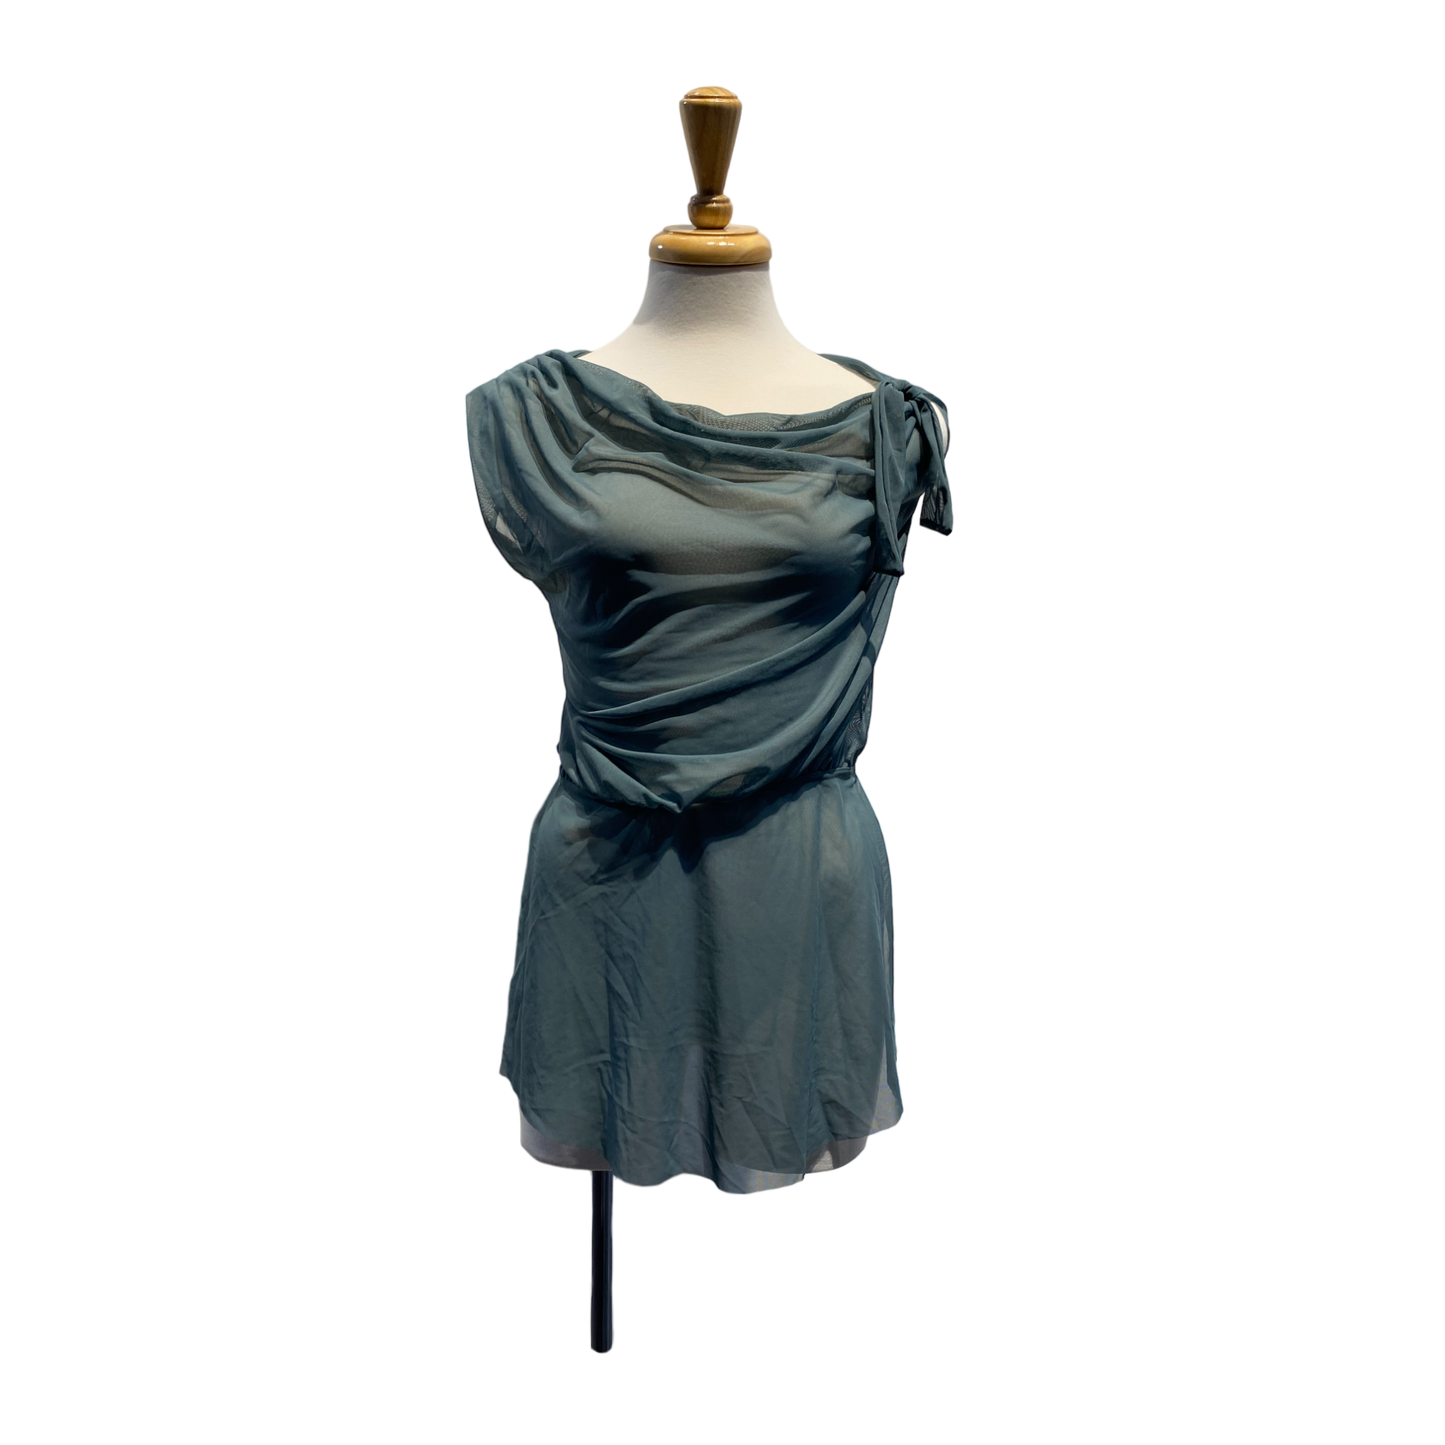 Sage green mesh dress